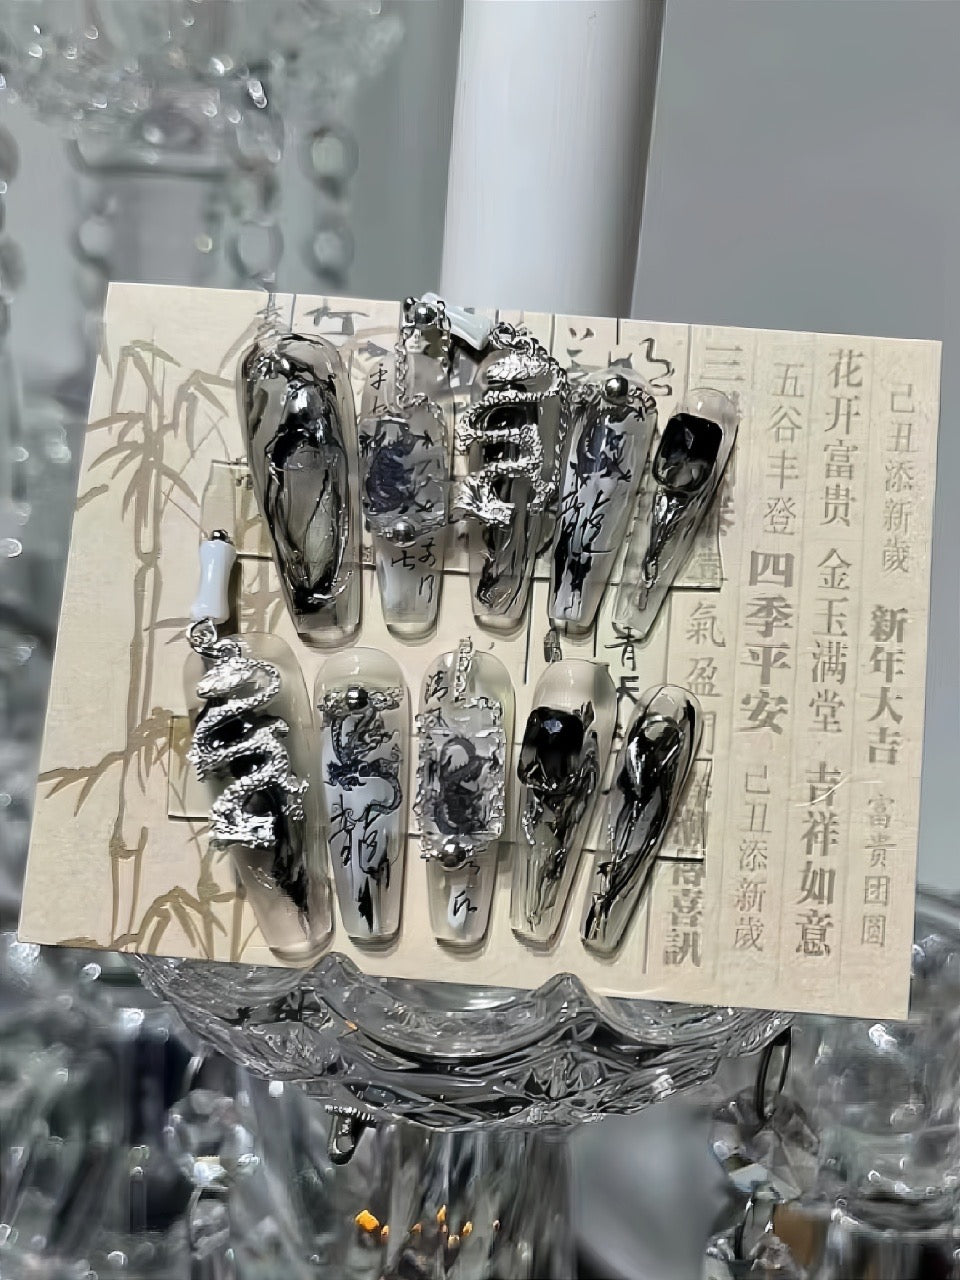 Limited Edition Handmade Fake Nails｜Ink and Wash Wandering Dragon